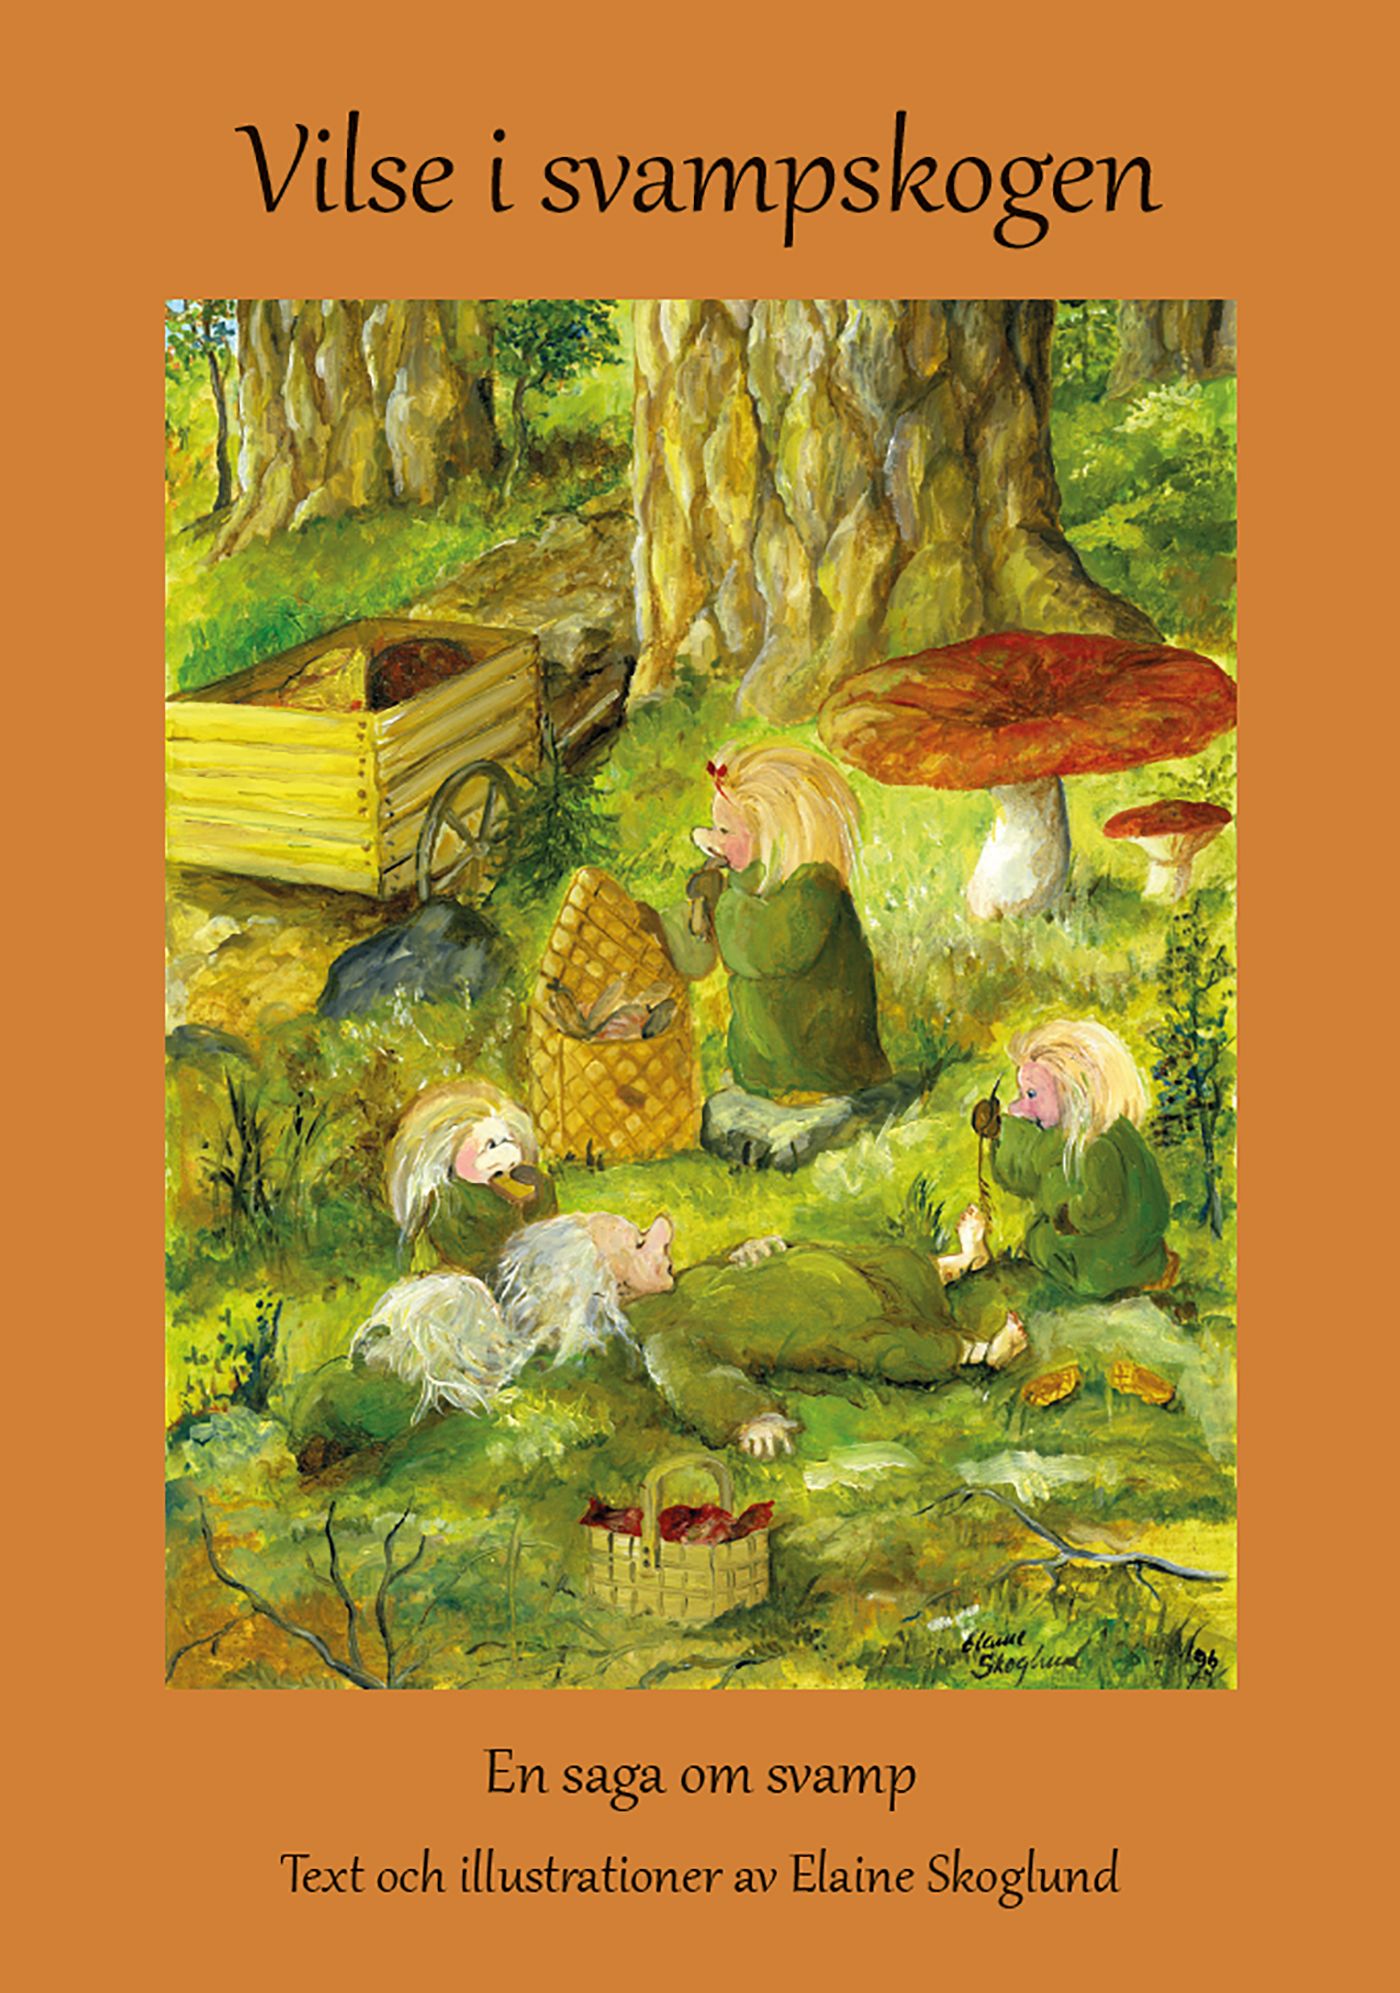 Vilse i svampskogen, e-bog af Elaine Skoglund